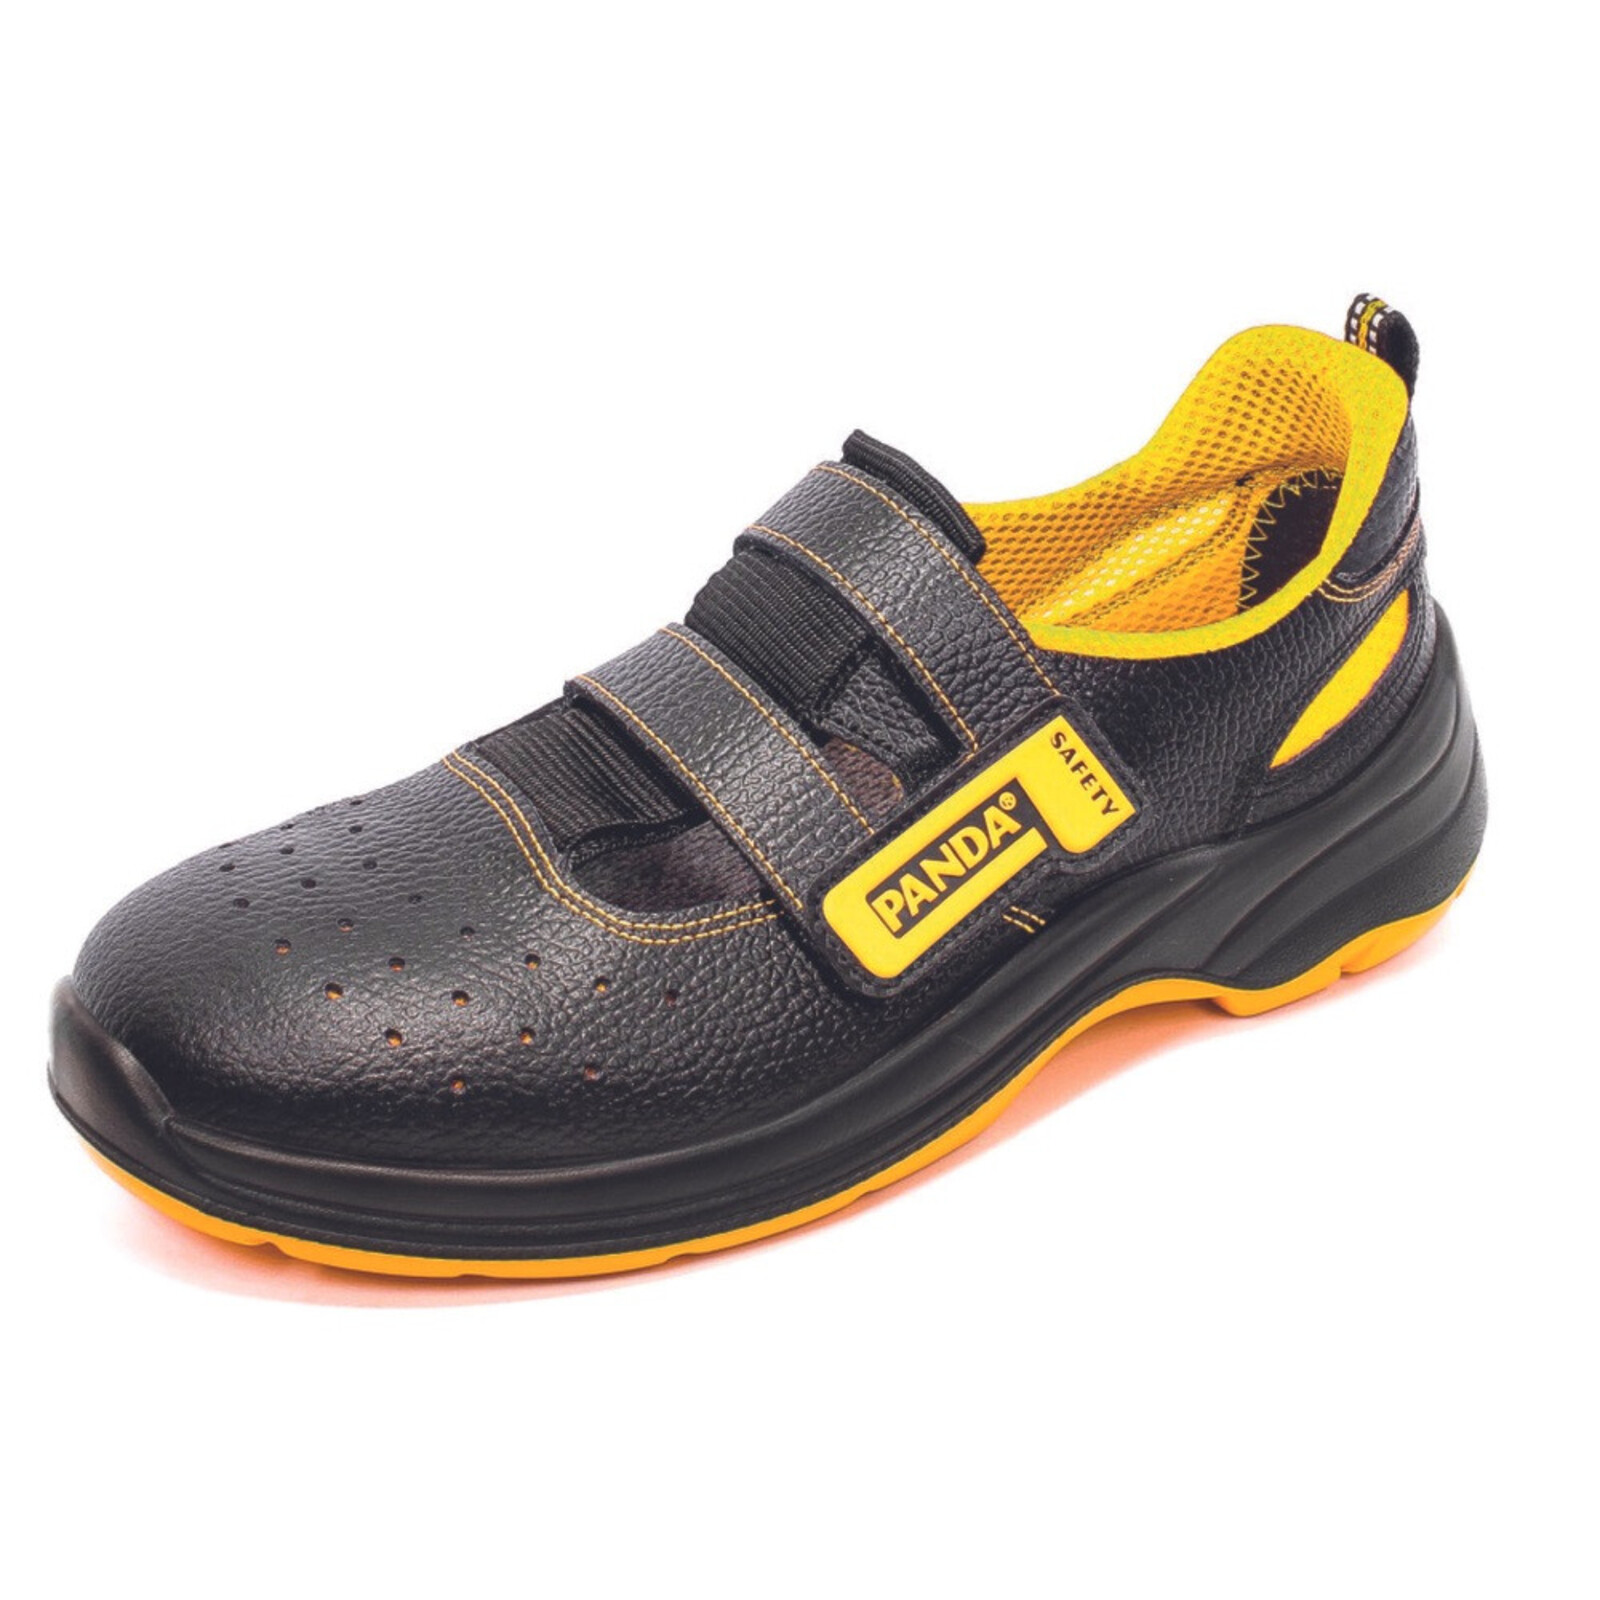 Bezpečnostné sandále Panda Basic Venezia MF S1P SRC - veľkosť: 46, farba: čierna/žltá